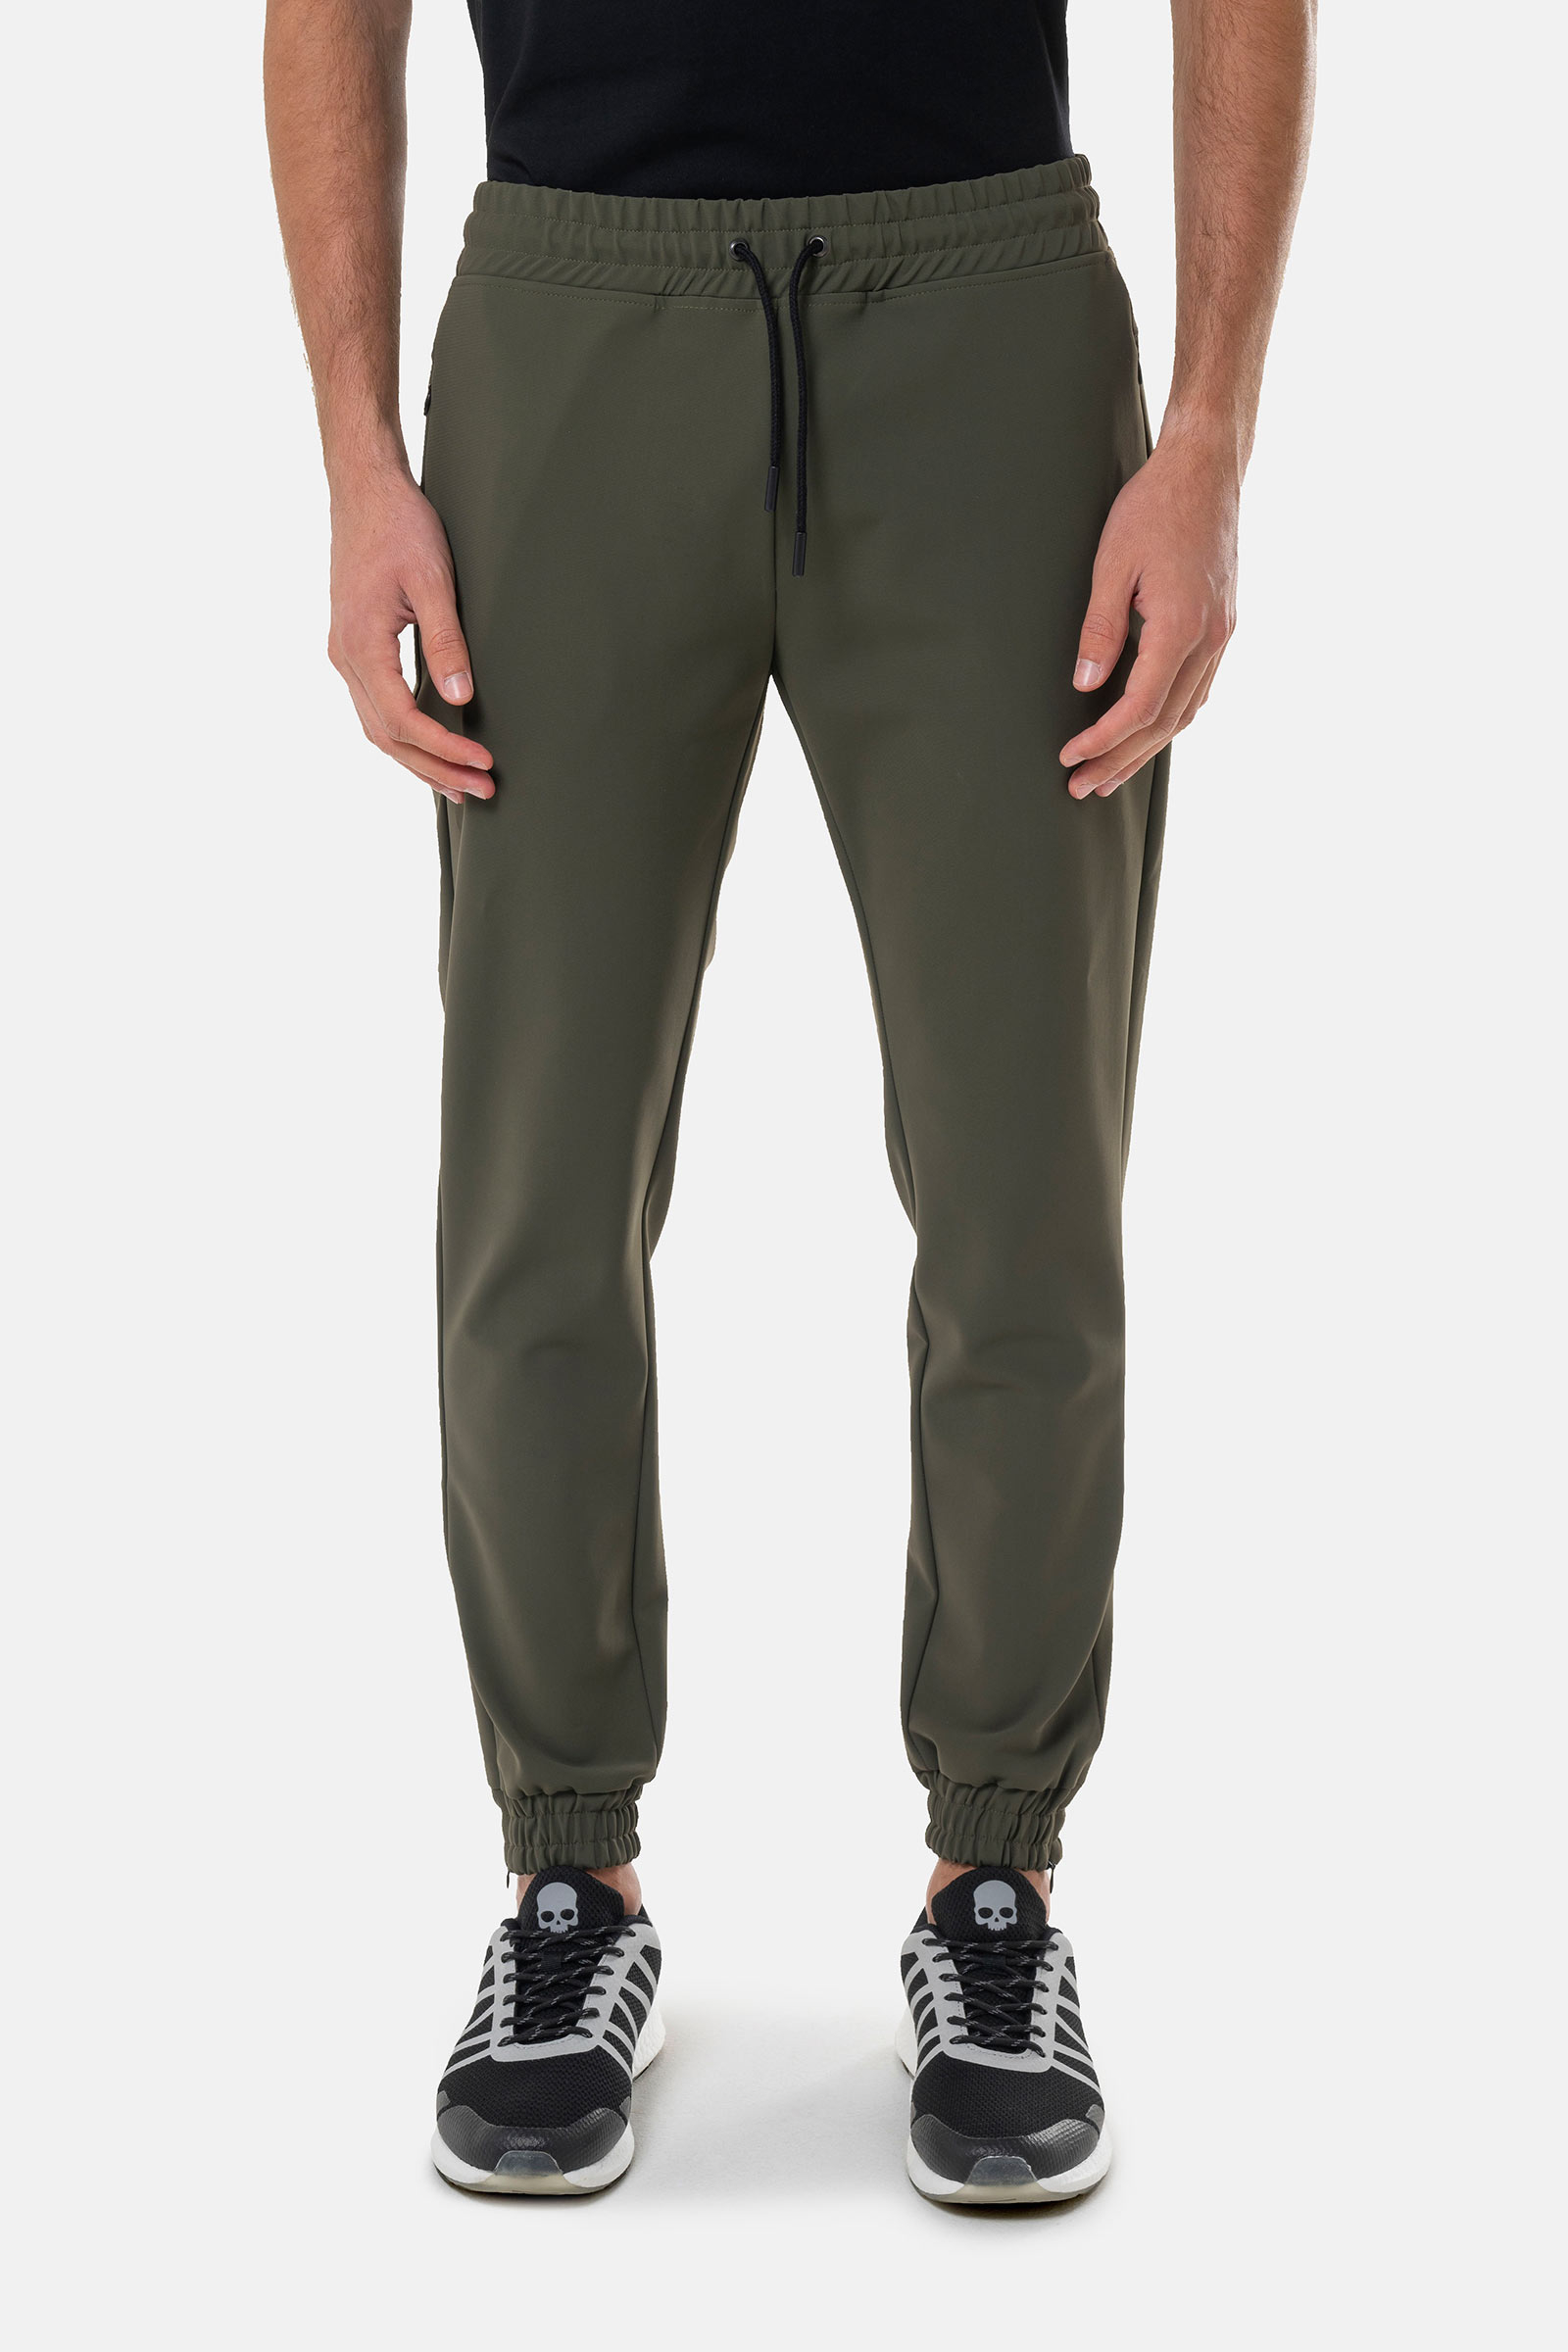 TECH PANTS - GREEN - Hydrogen - Luxury Sportwear